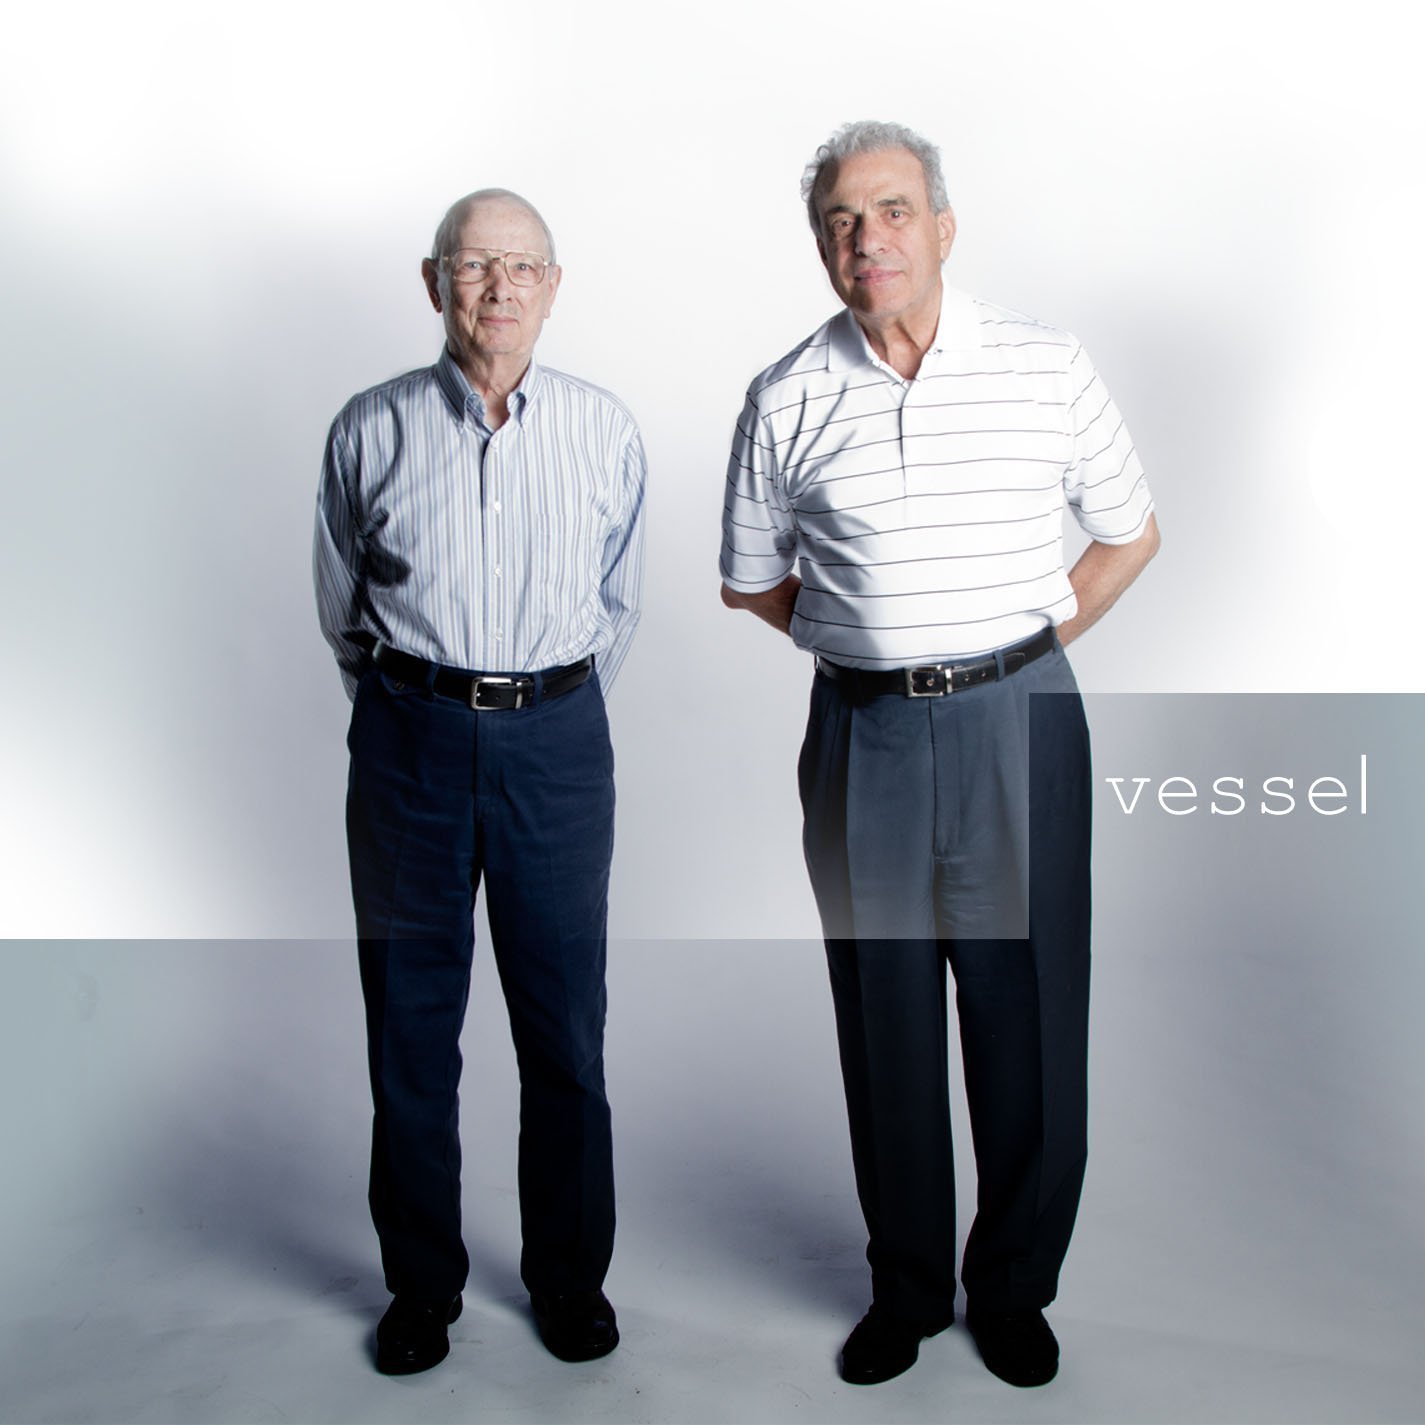 Płyta winylowa Twenty One Pilots - Vessel (LP)